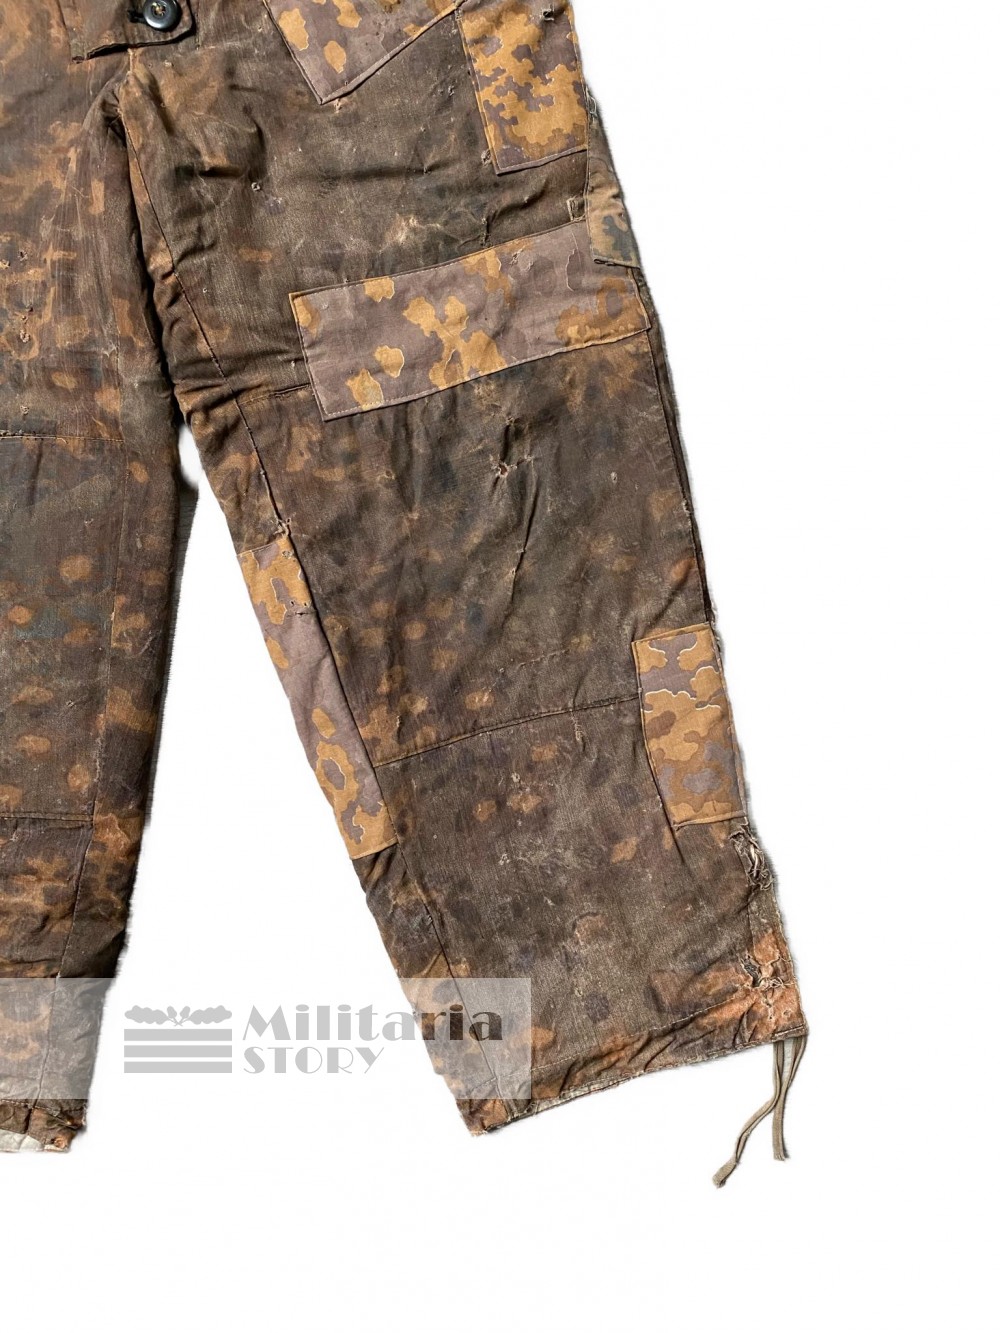 Waffen SS Autumn Oak Leaf trousers - Waffen SS Autumn Oak Leaf trousers: Third Reich Uniforms